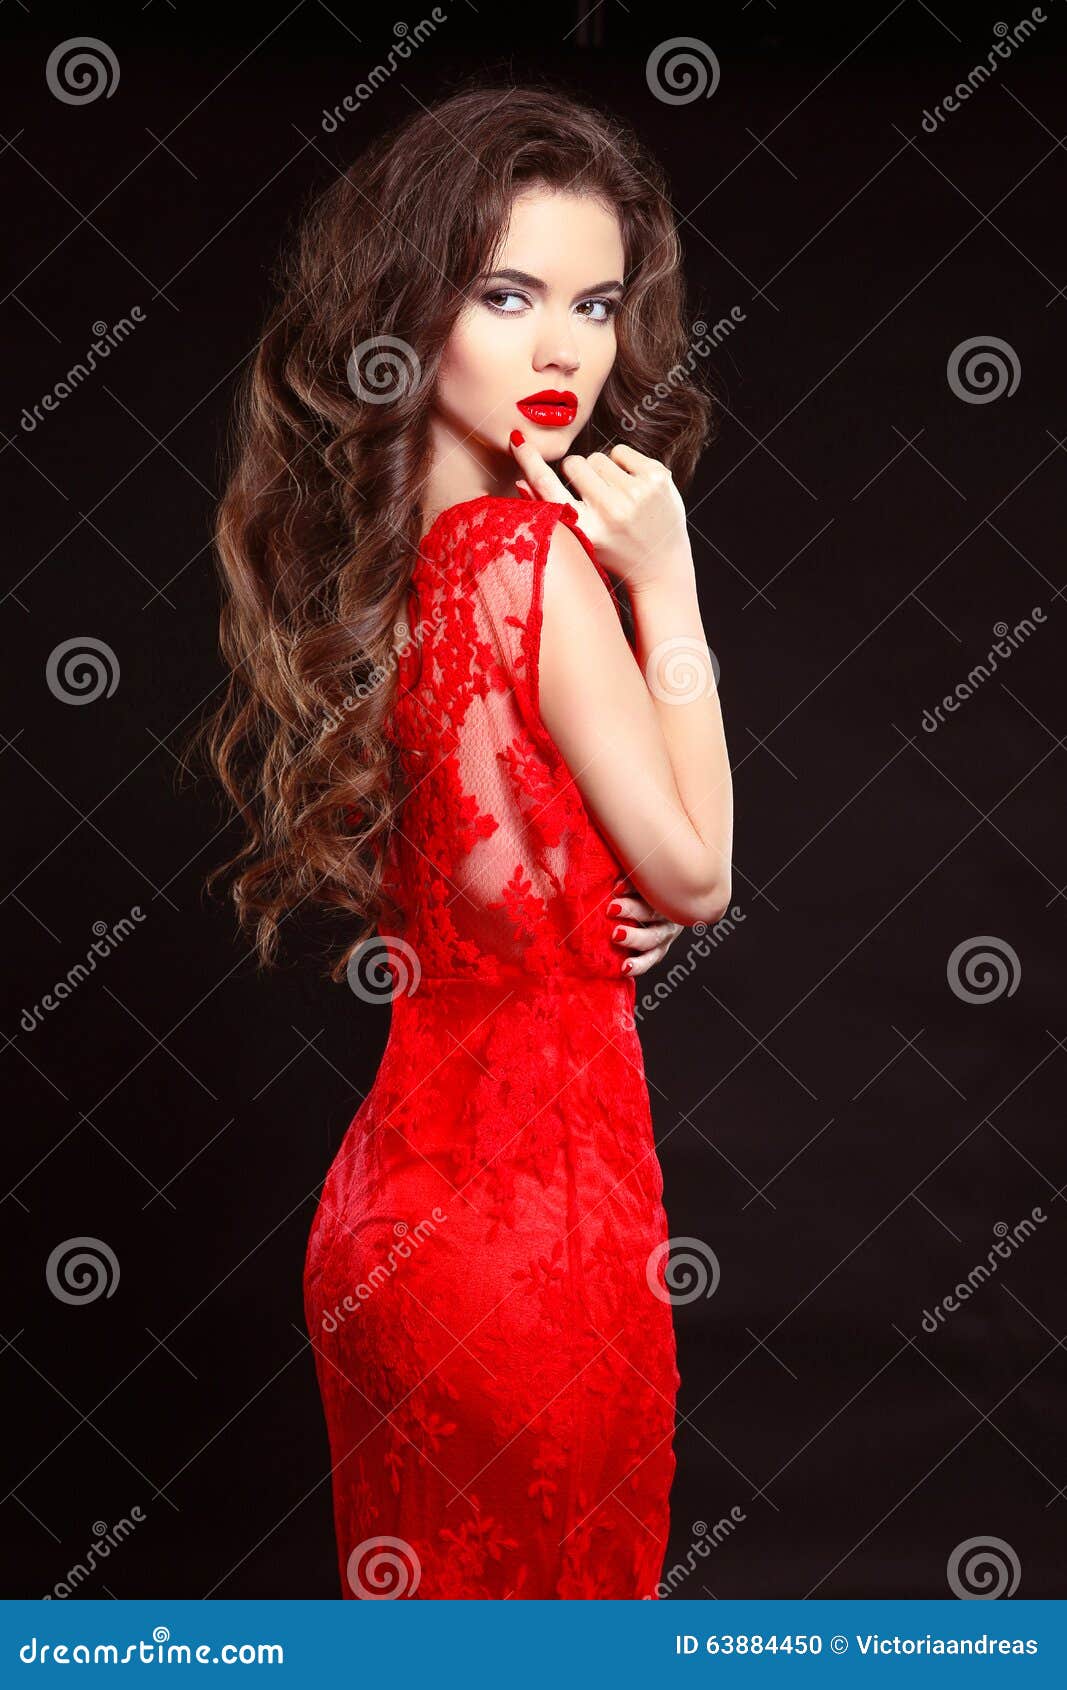 Mujer Elegante De La Moda De La Belleza En El Vestido Rojo Aislado En La Parte Posterior Del Negro de archivo - Imagen de muchacha, negro: 63884450